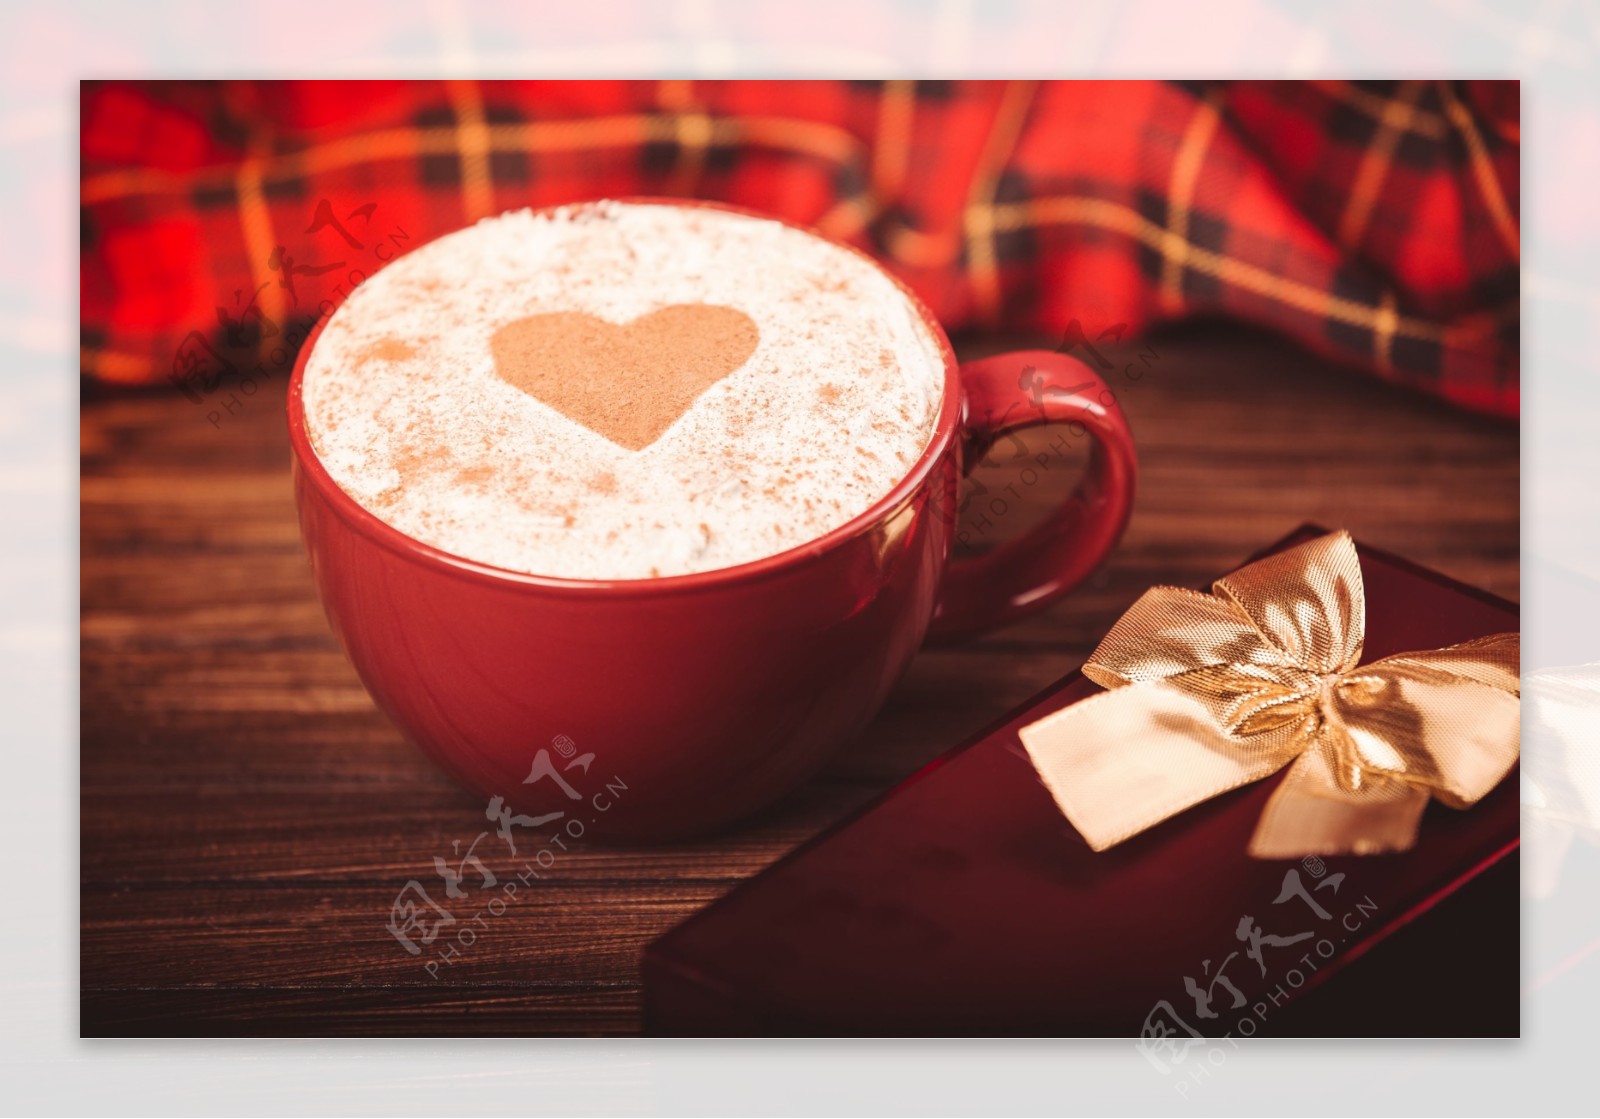 情侣咖啡杯与心形图案咖啡